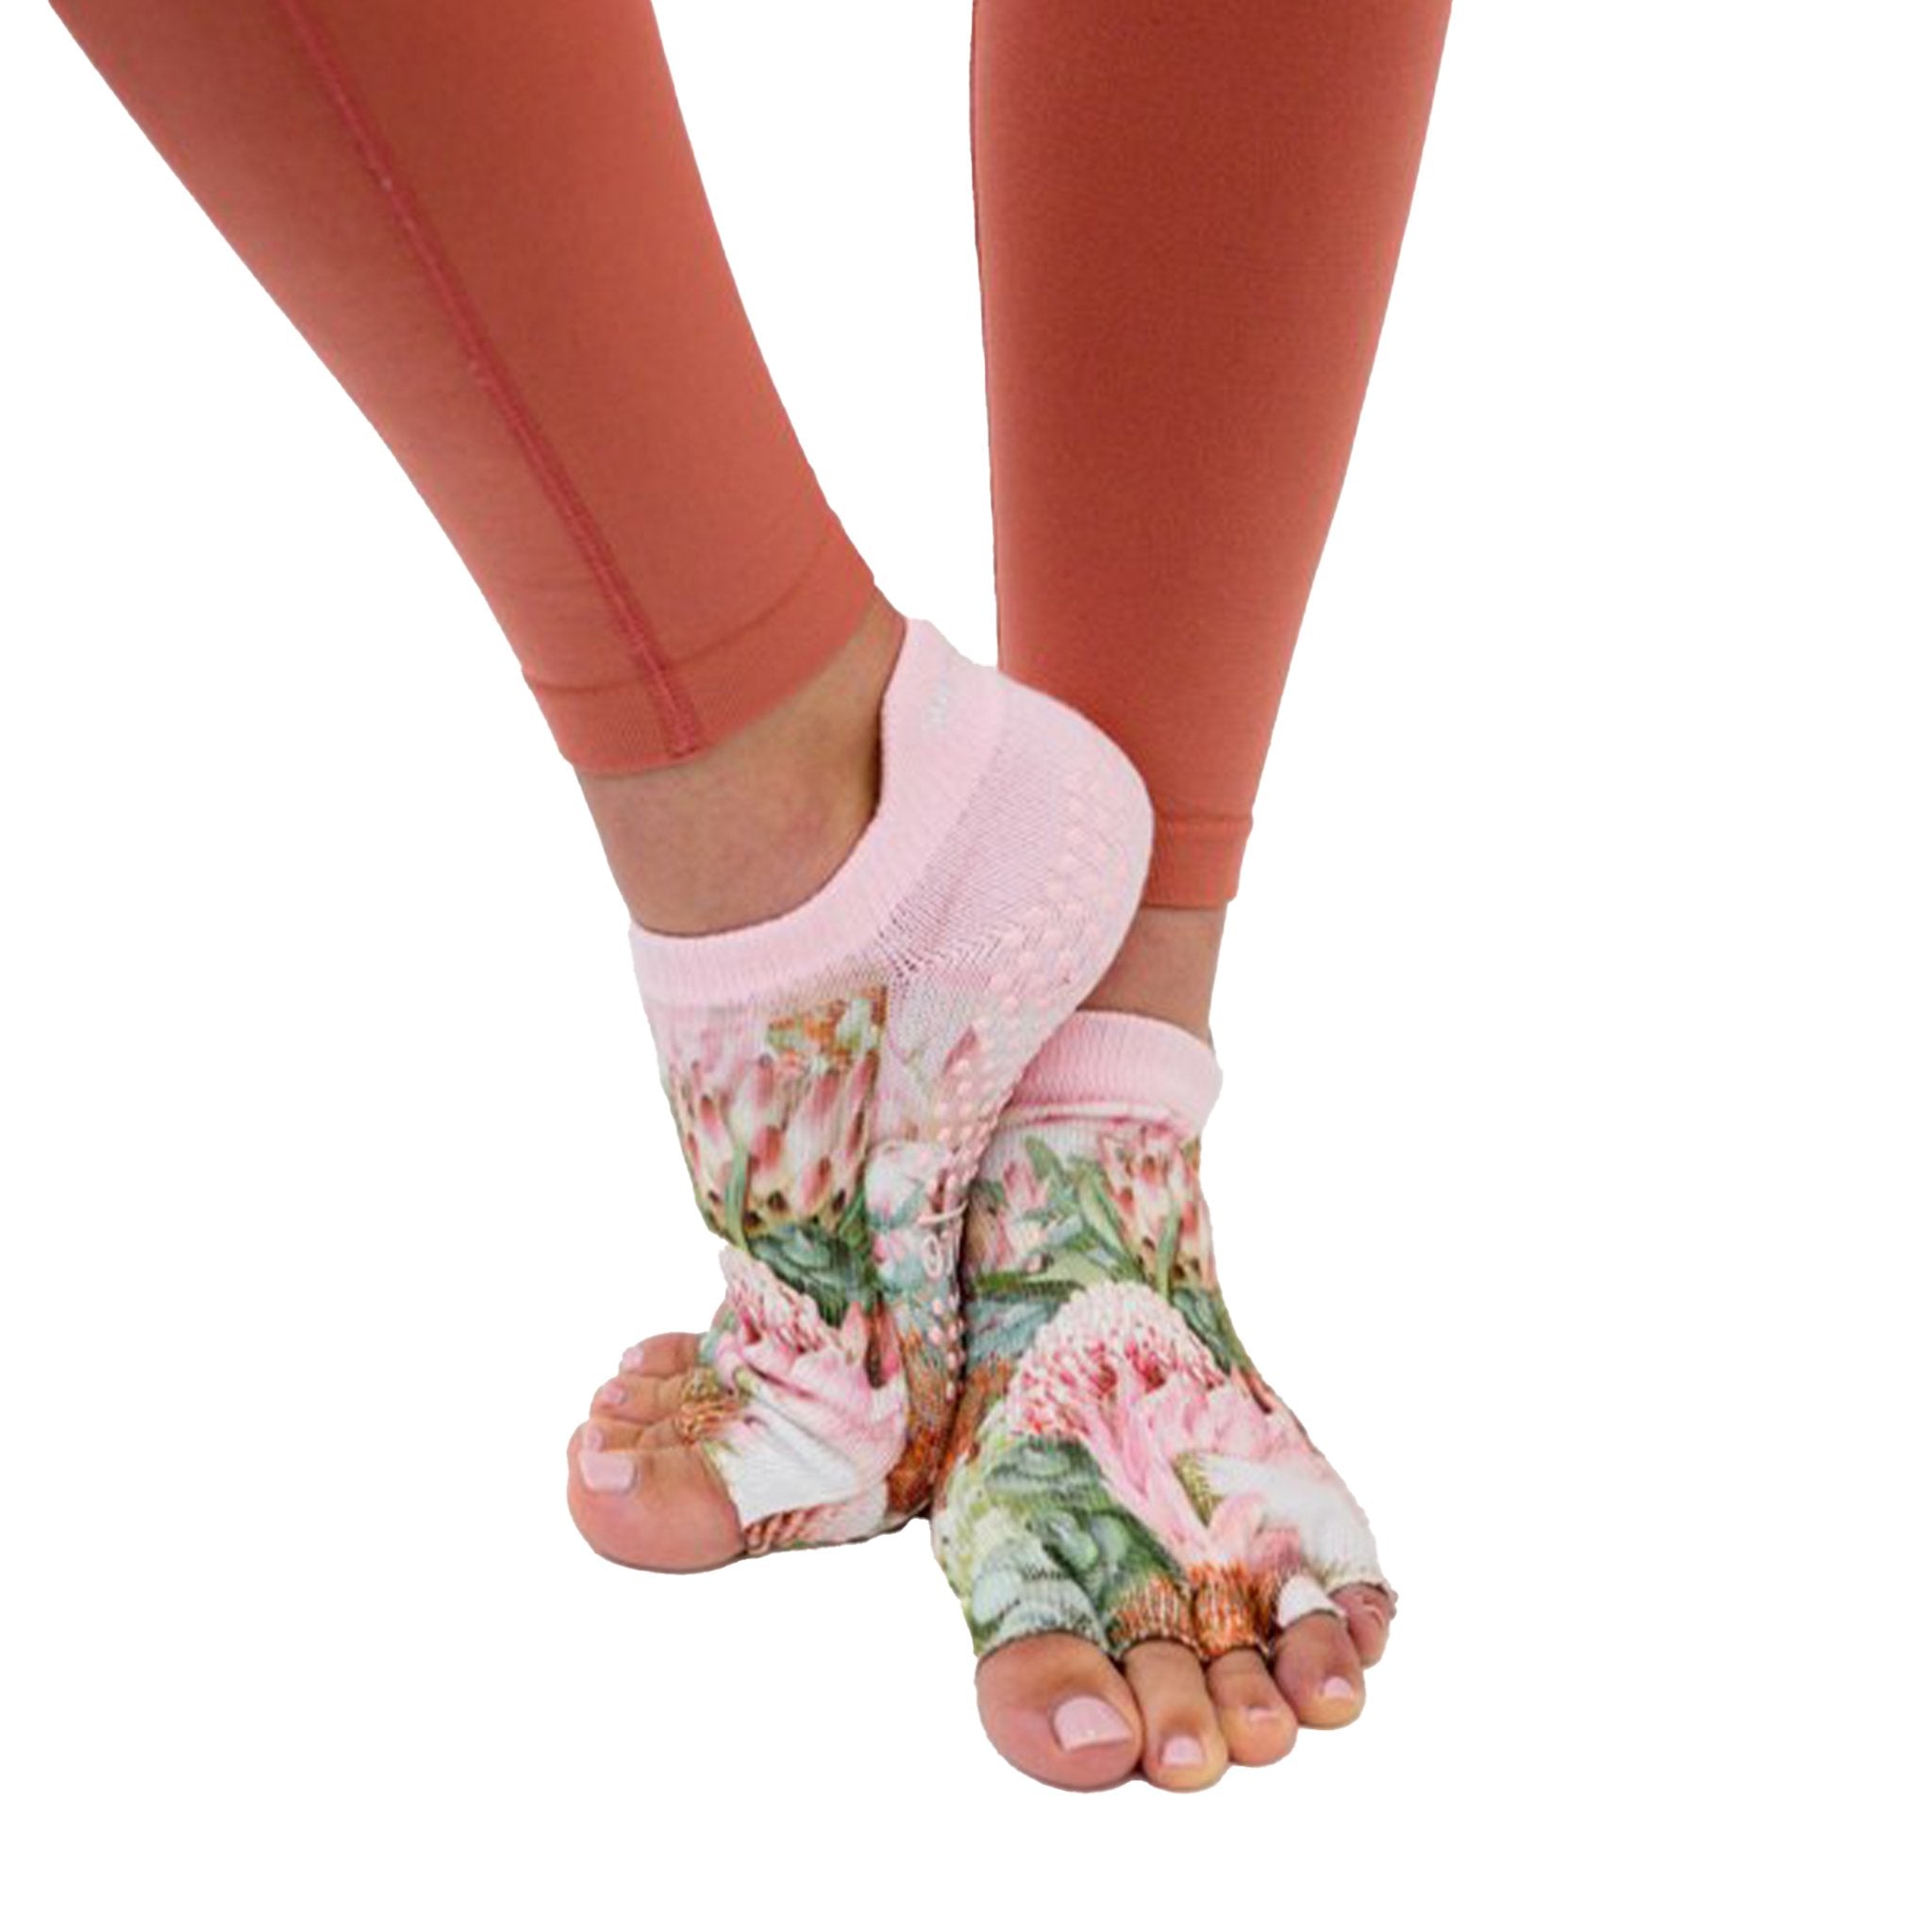  Grip Socks For Women - Pilates Socks